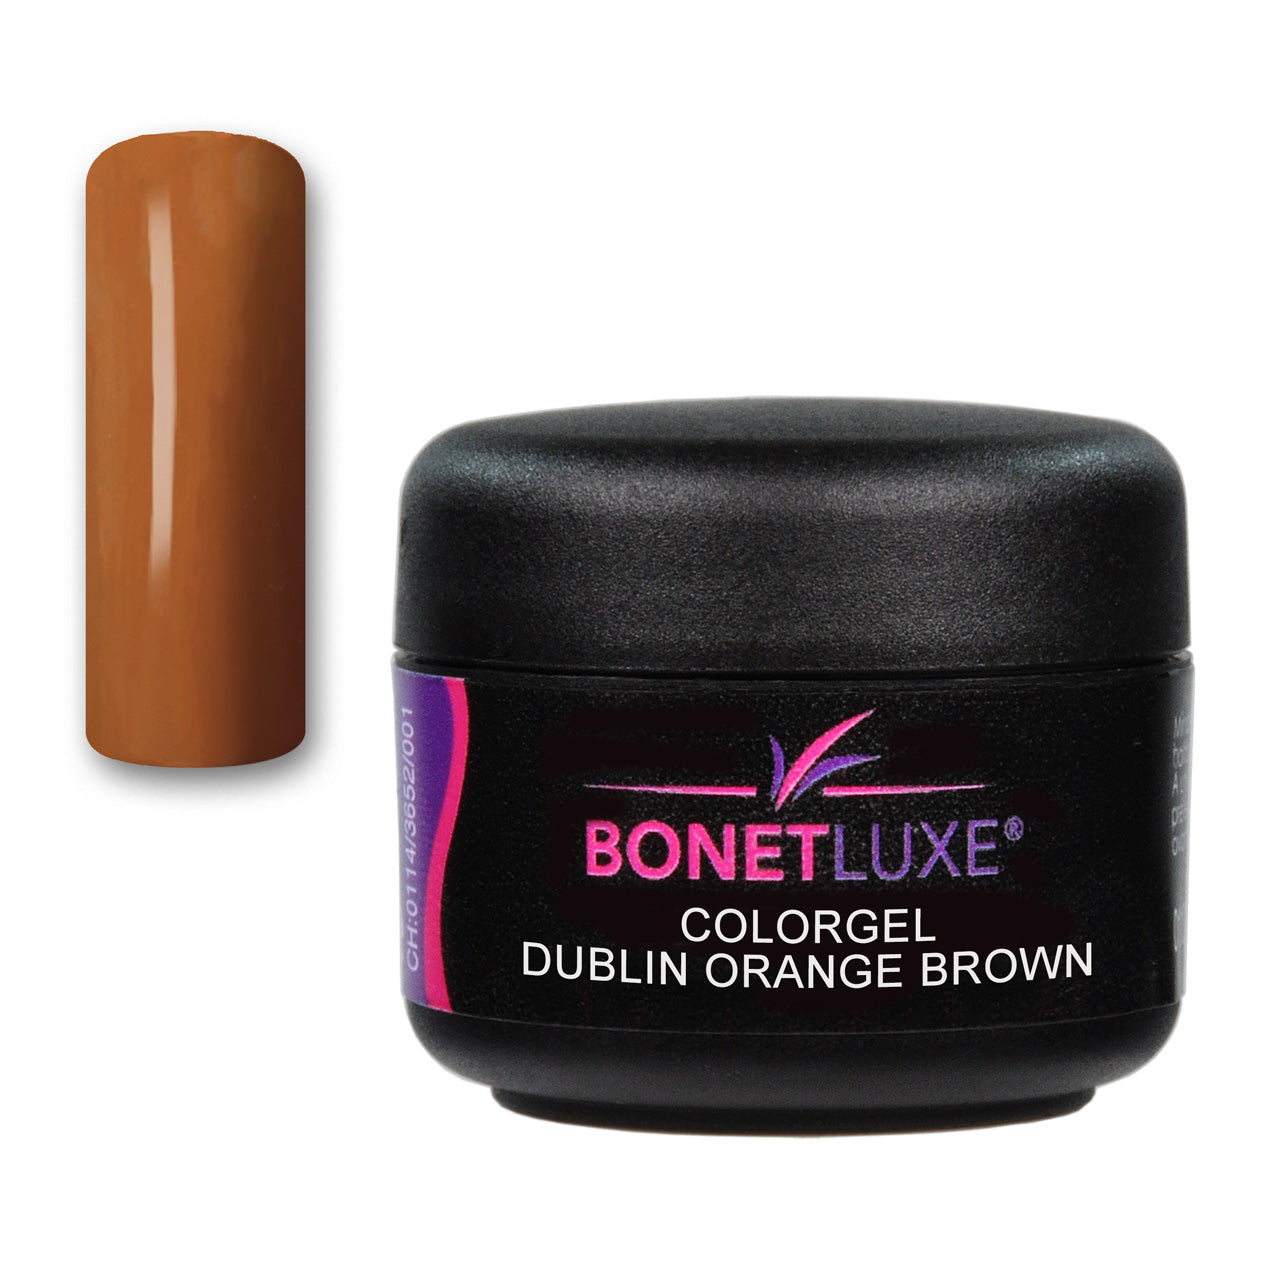 Bonetluxe Colorgel Dublin Orange Brown